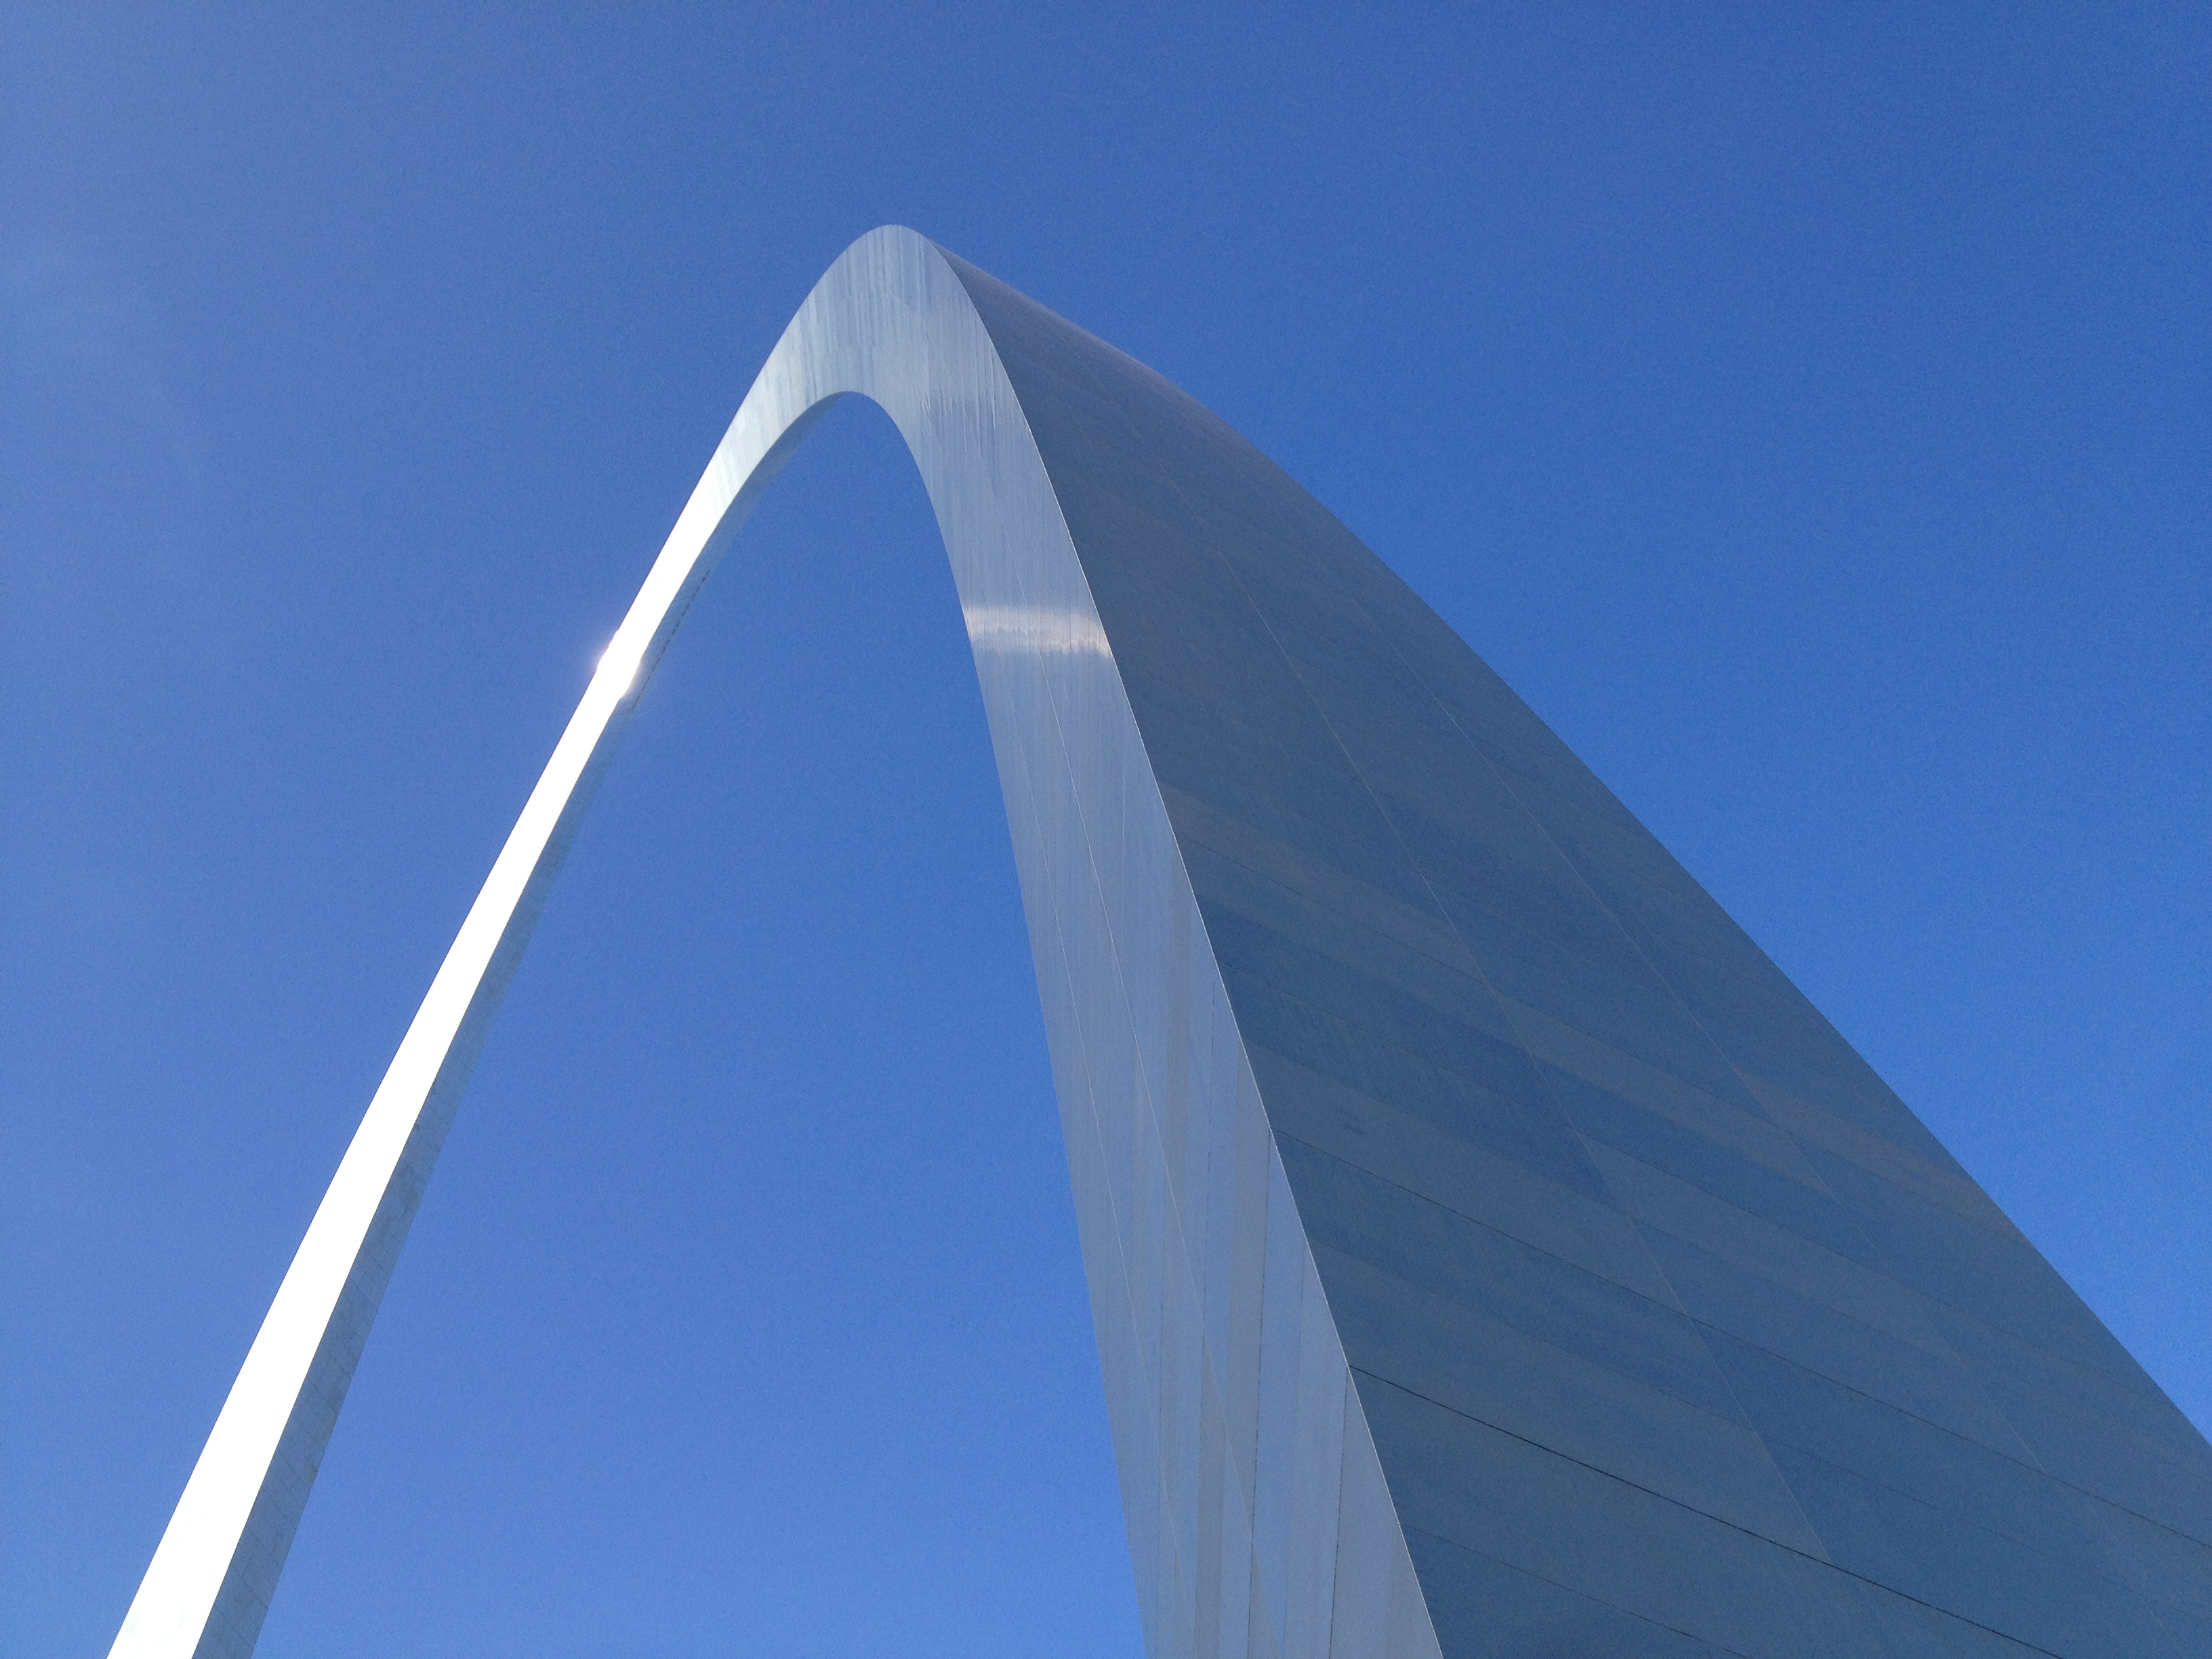 Das größte Gebäude in den Staaten aus rostfreiem Stahl, verkünden die Flyer.